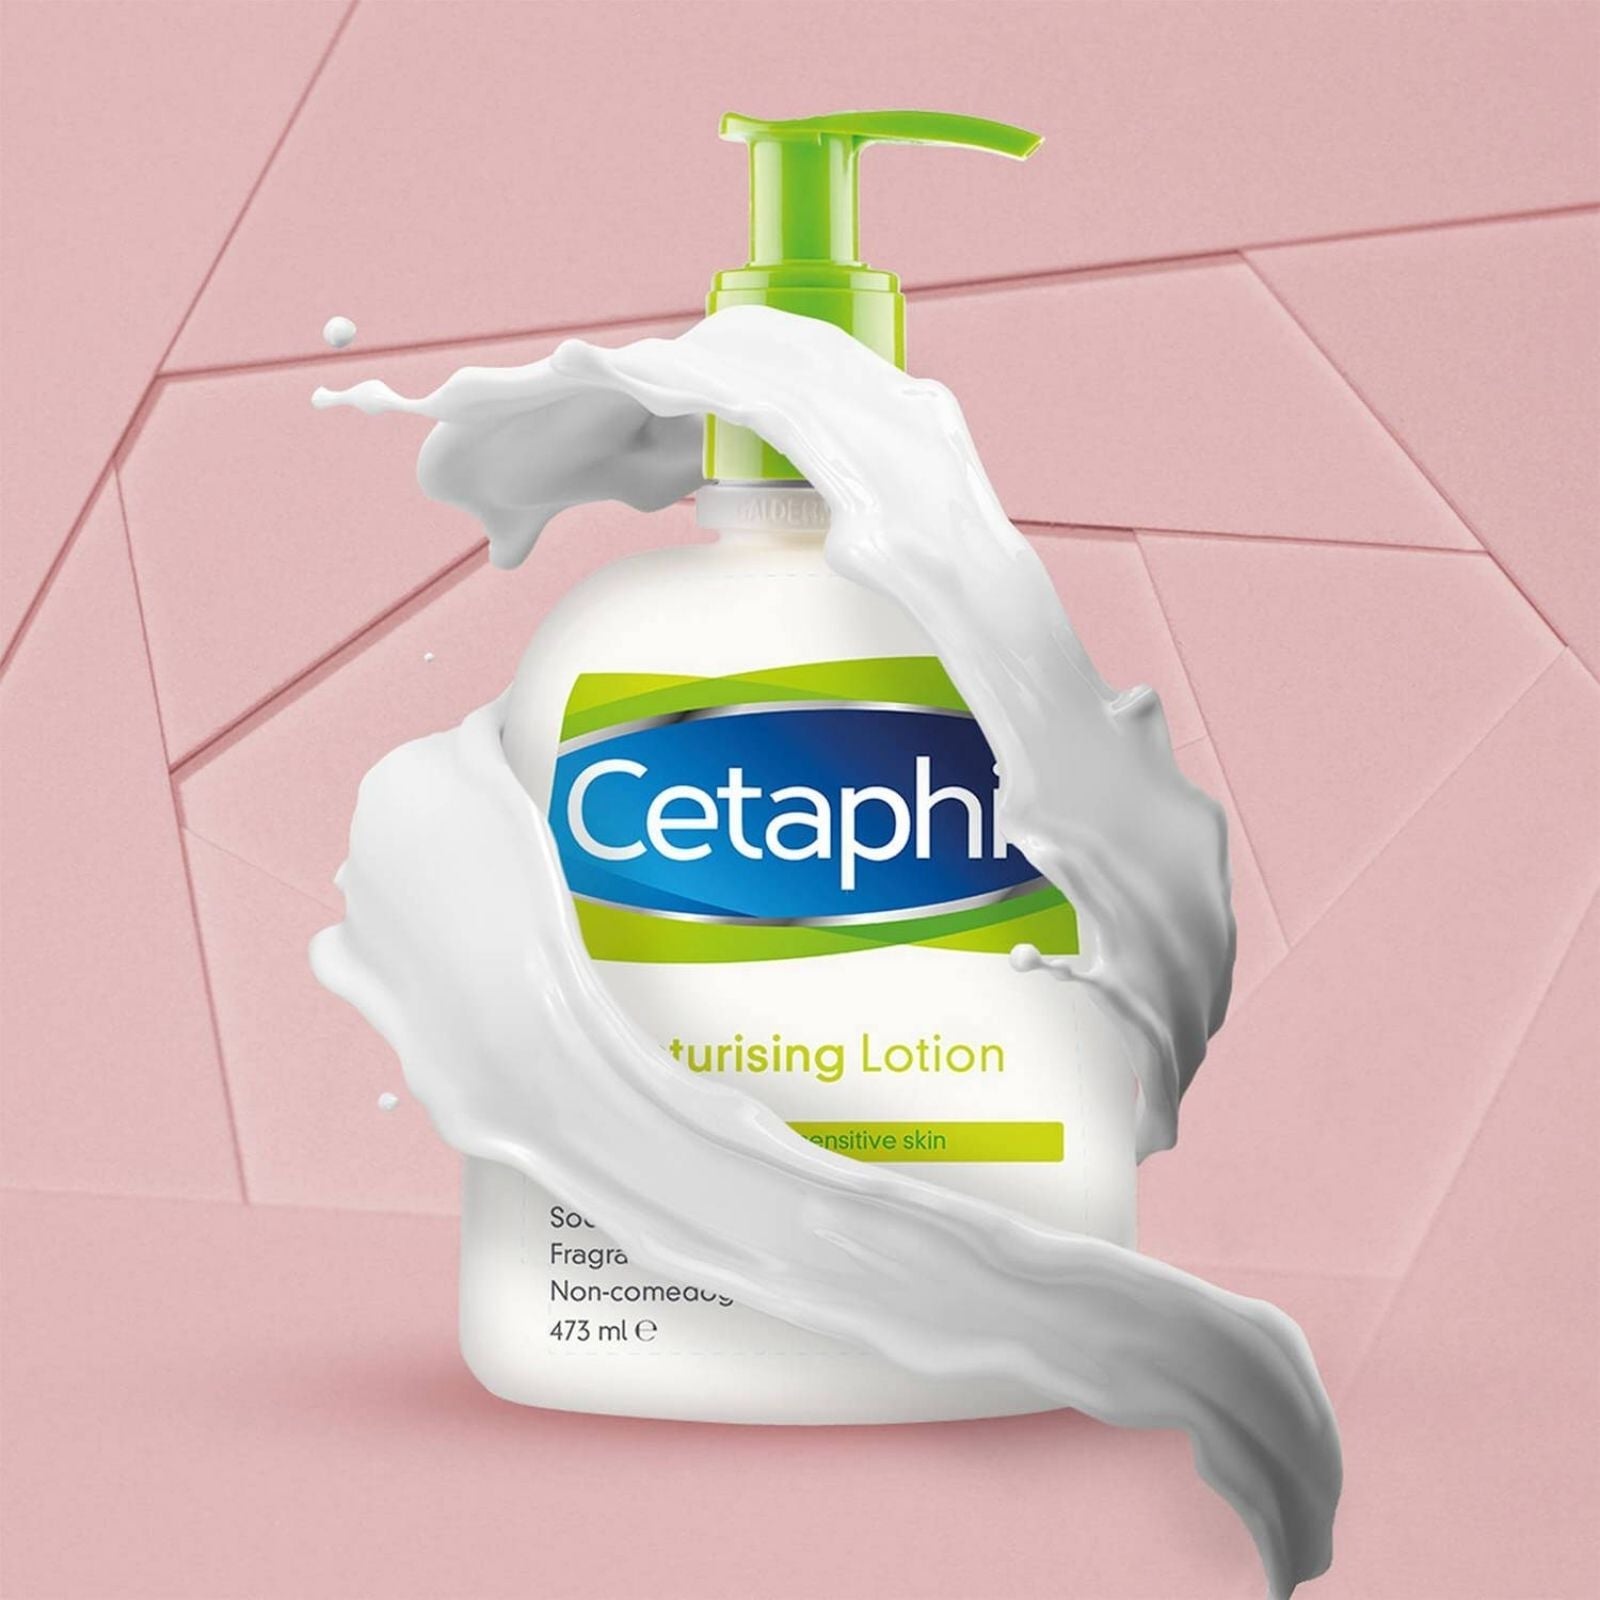 Cetaphil Cetaphil | Moisturizing Lotion | 473ml - SkinShop